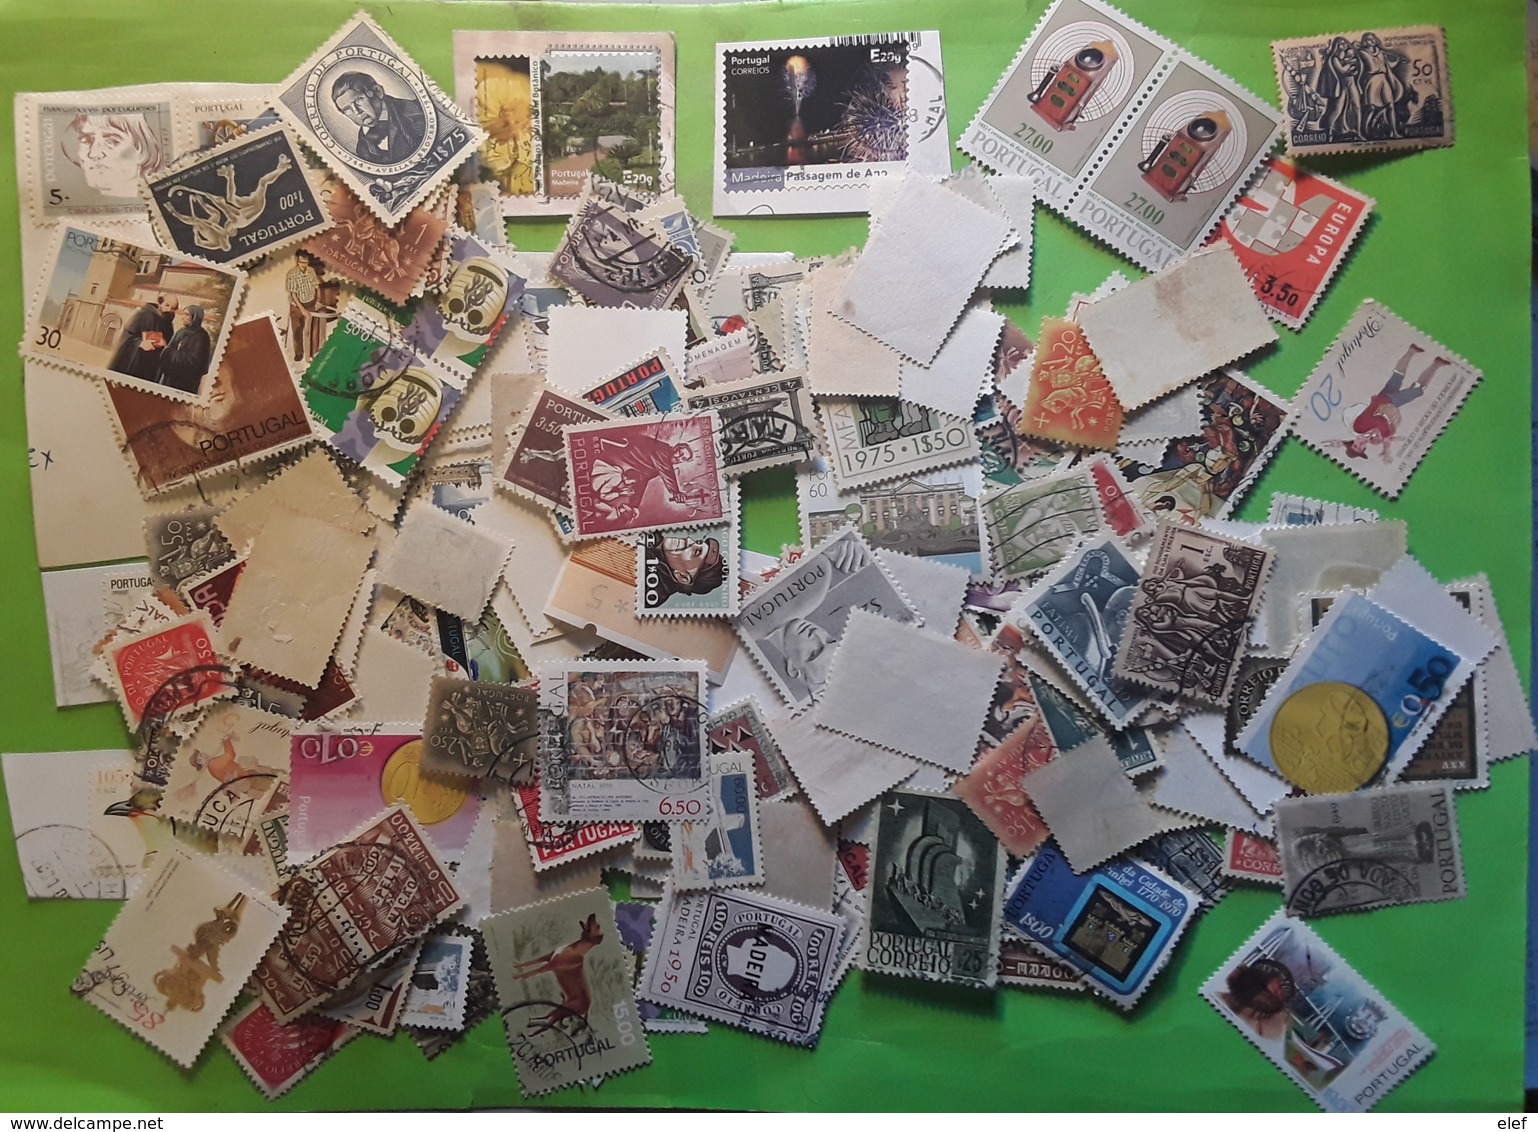 PORTUGAL, Collection plusieurs centaines de timbres neufs / obl, classiques à moderne ,colonies, iles, Blocs, FORTE COTE